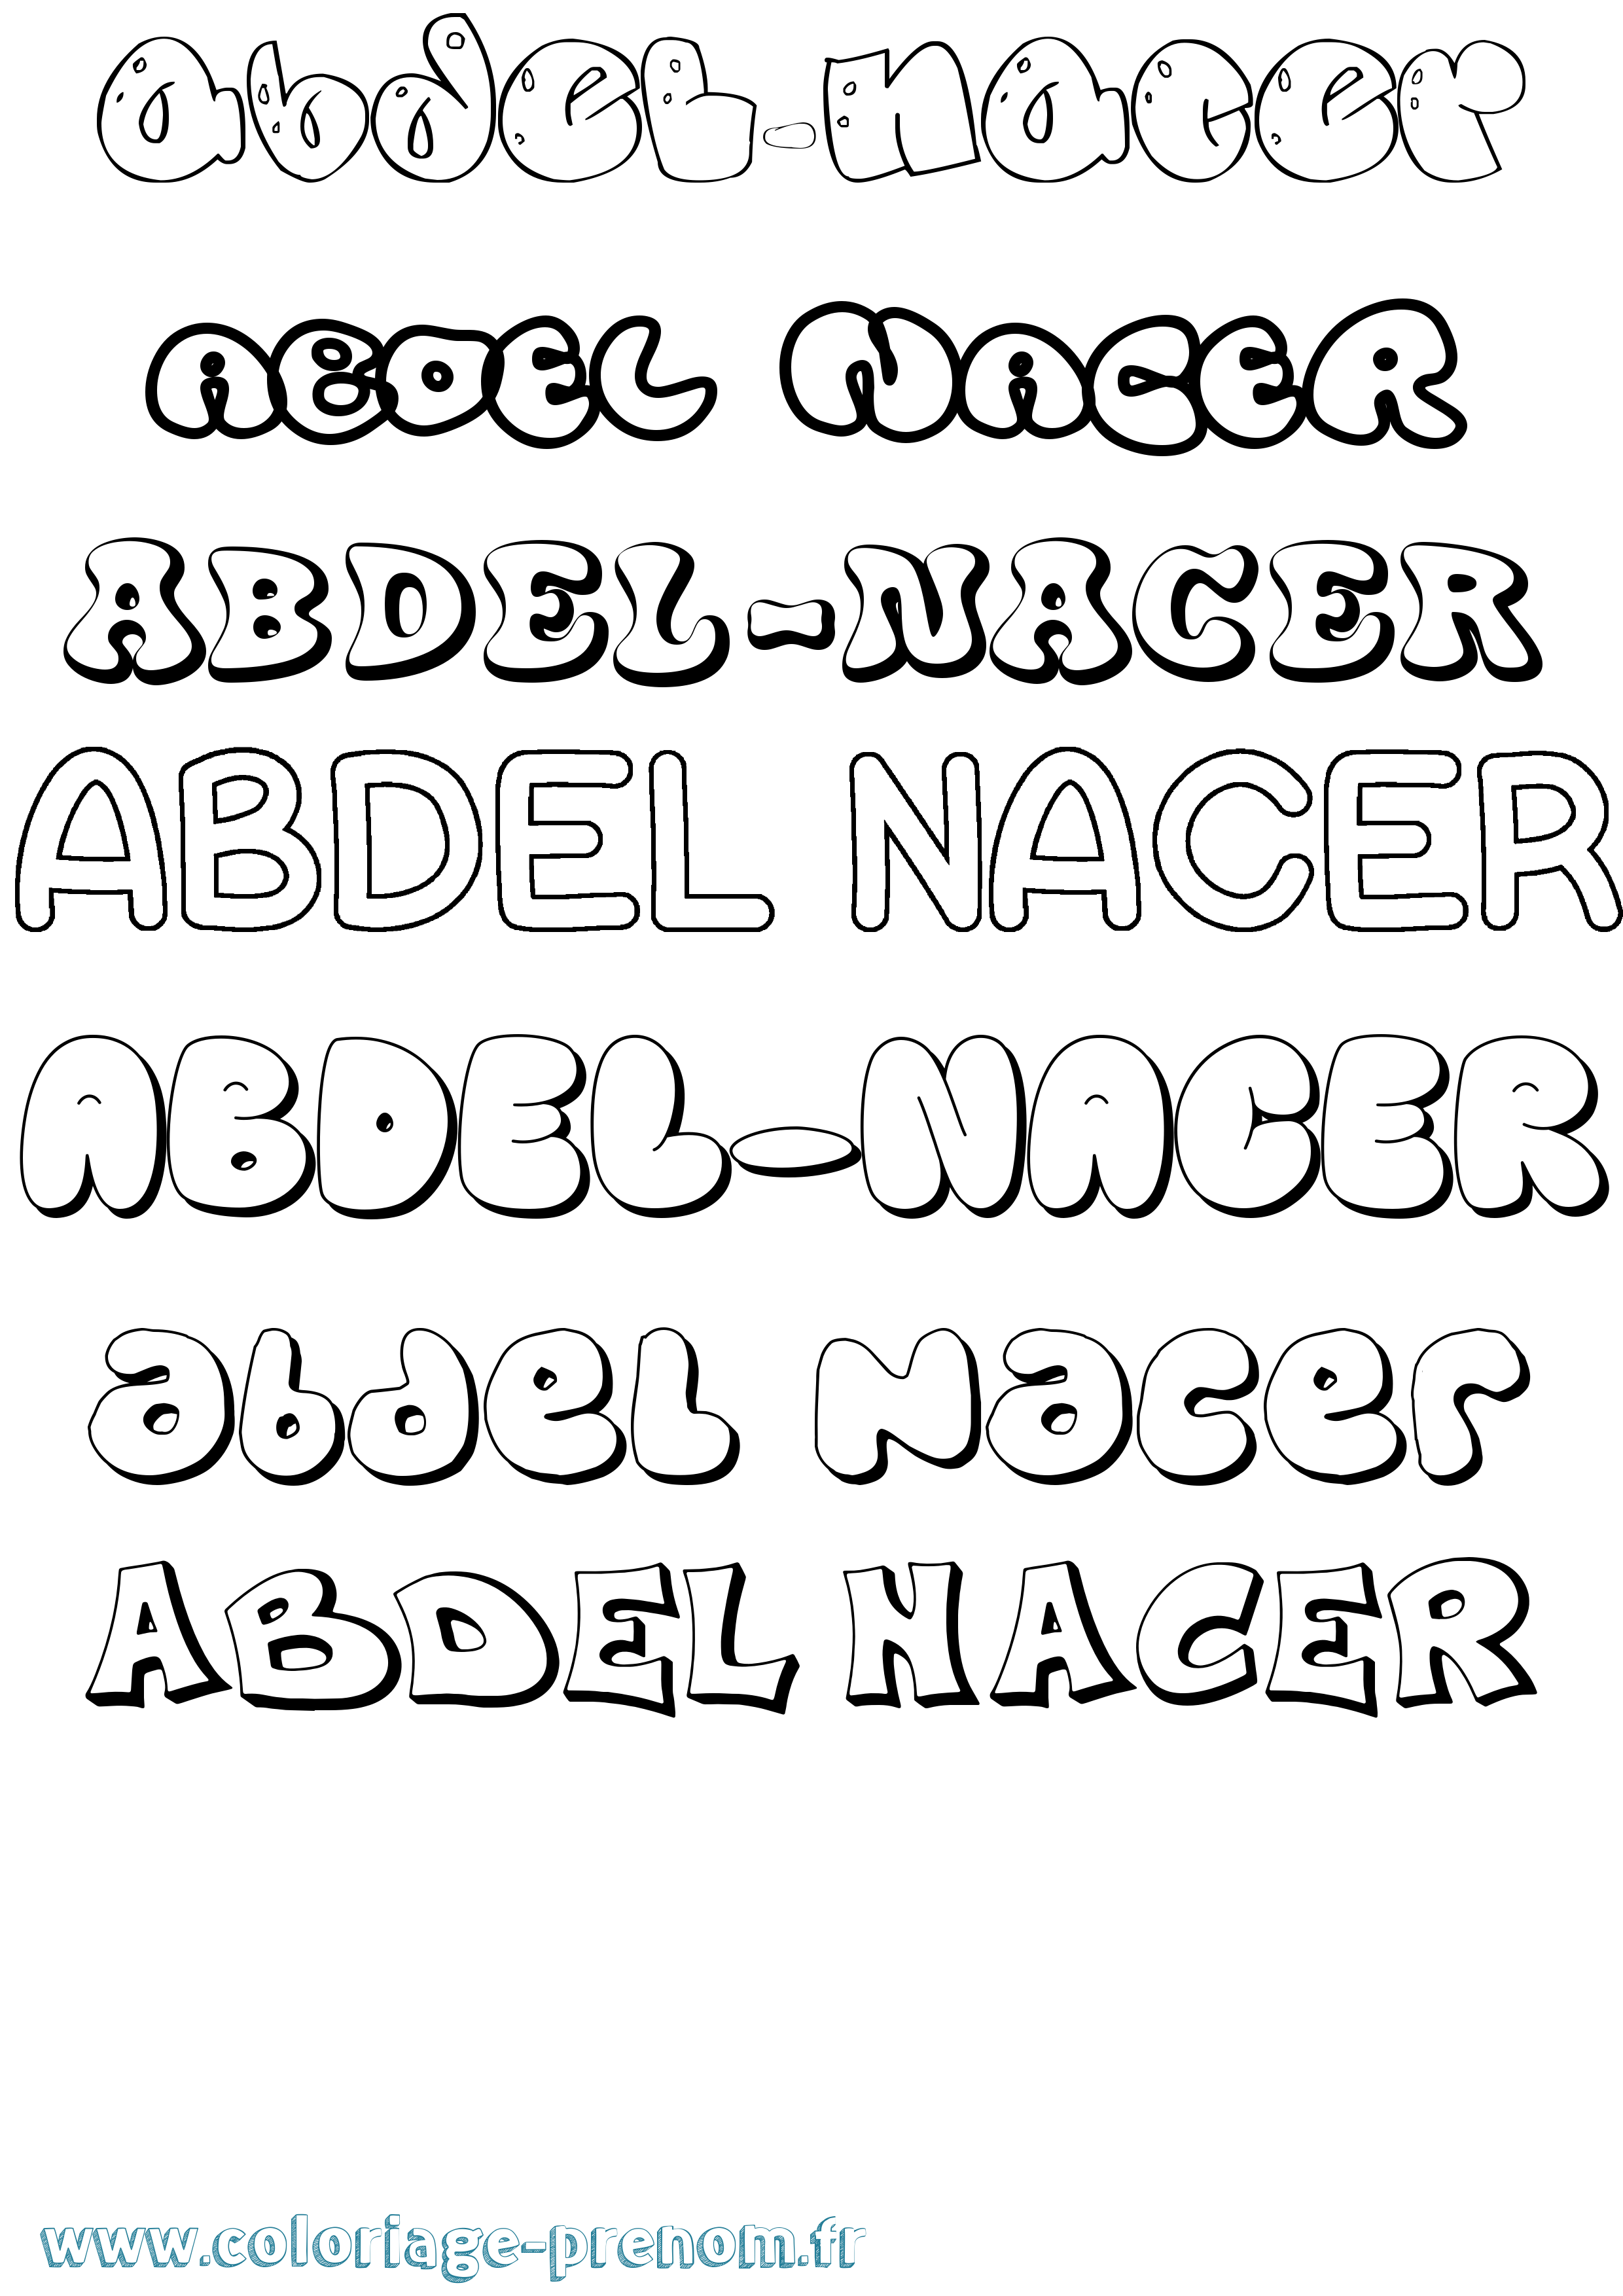 Coloriage prénom Abdel-Nacer Bubble